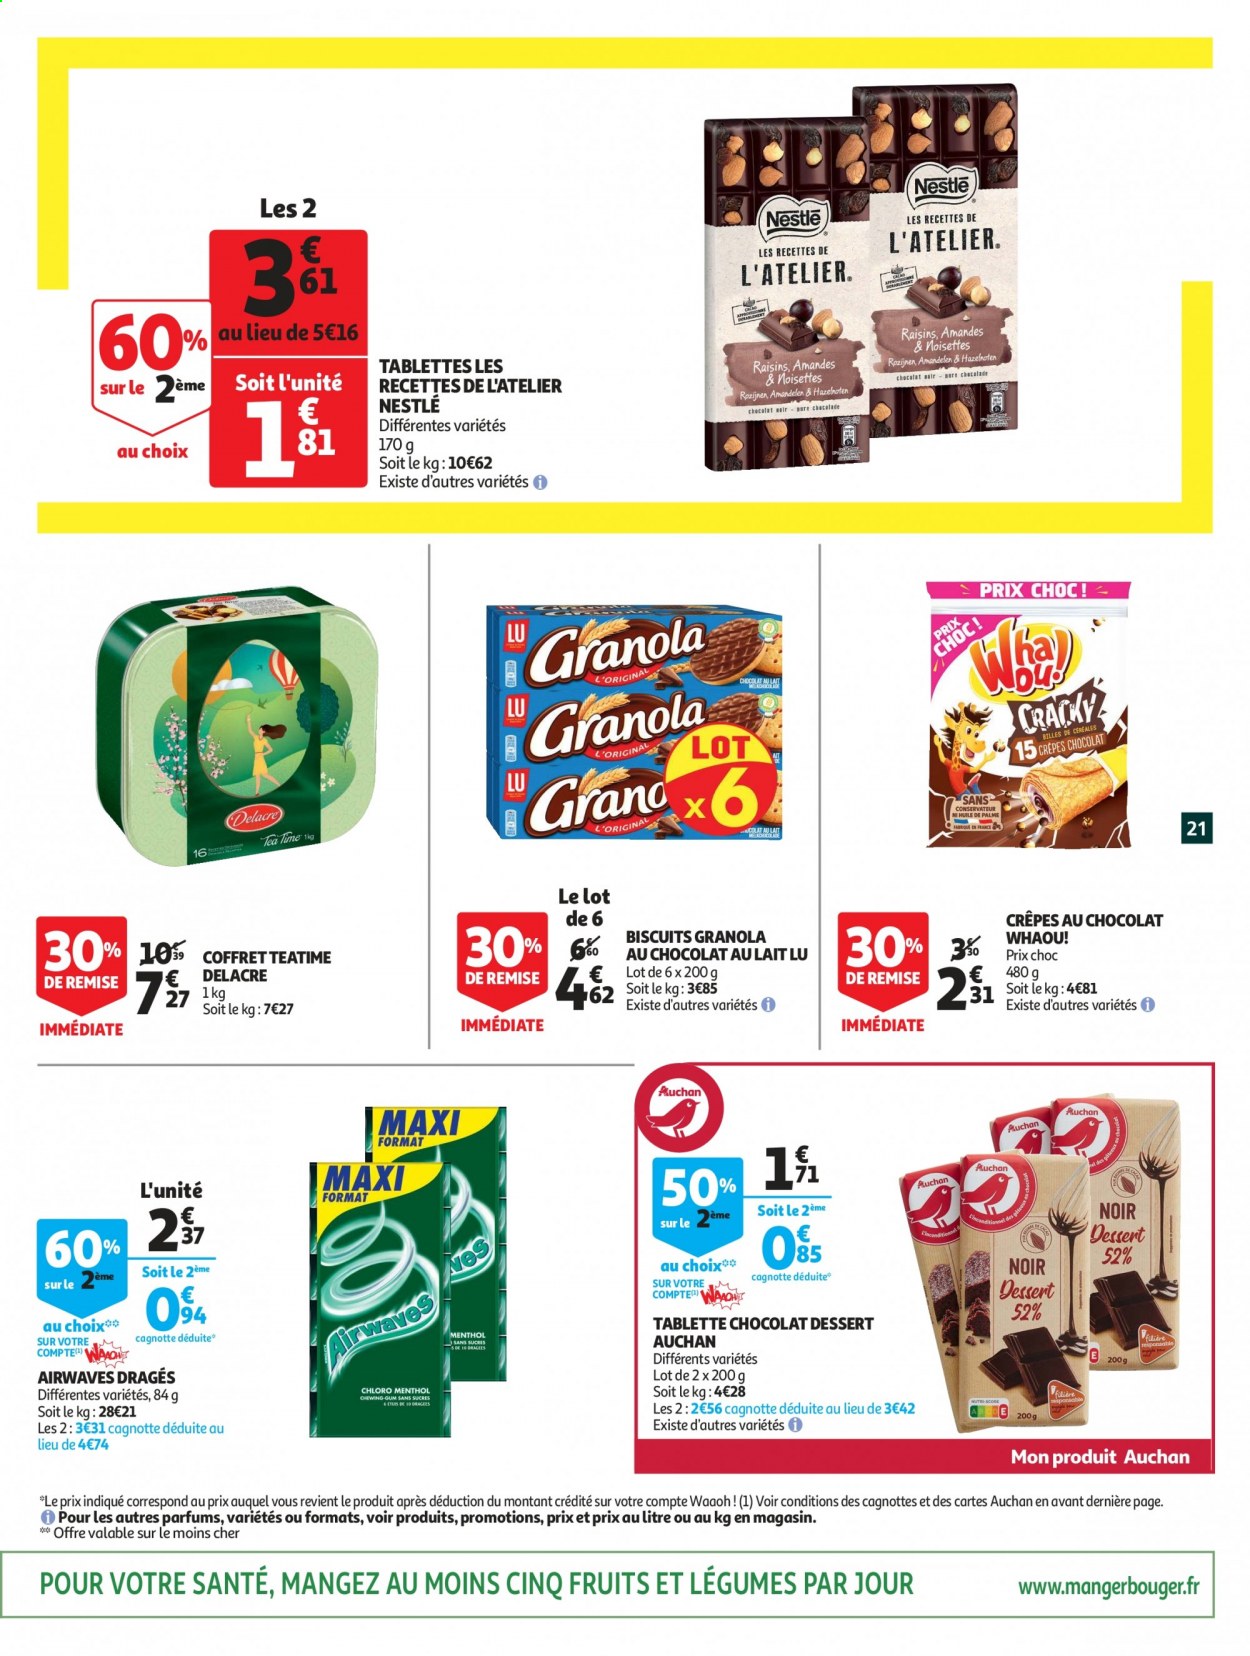 thumbnail - Catalogue Auchan - 24/03/2021 - 05/04/2021 - Produits soldés - crêpes, dessert, Nestlé, granola, Delacre, LU, raisins, coffret. Page 21.